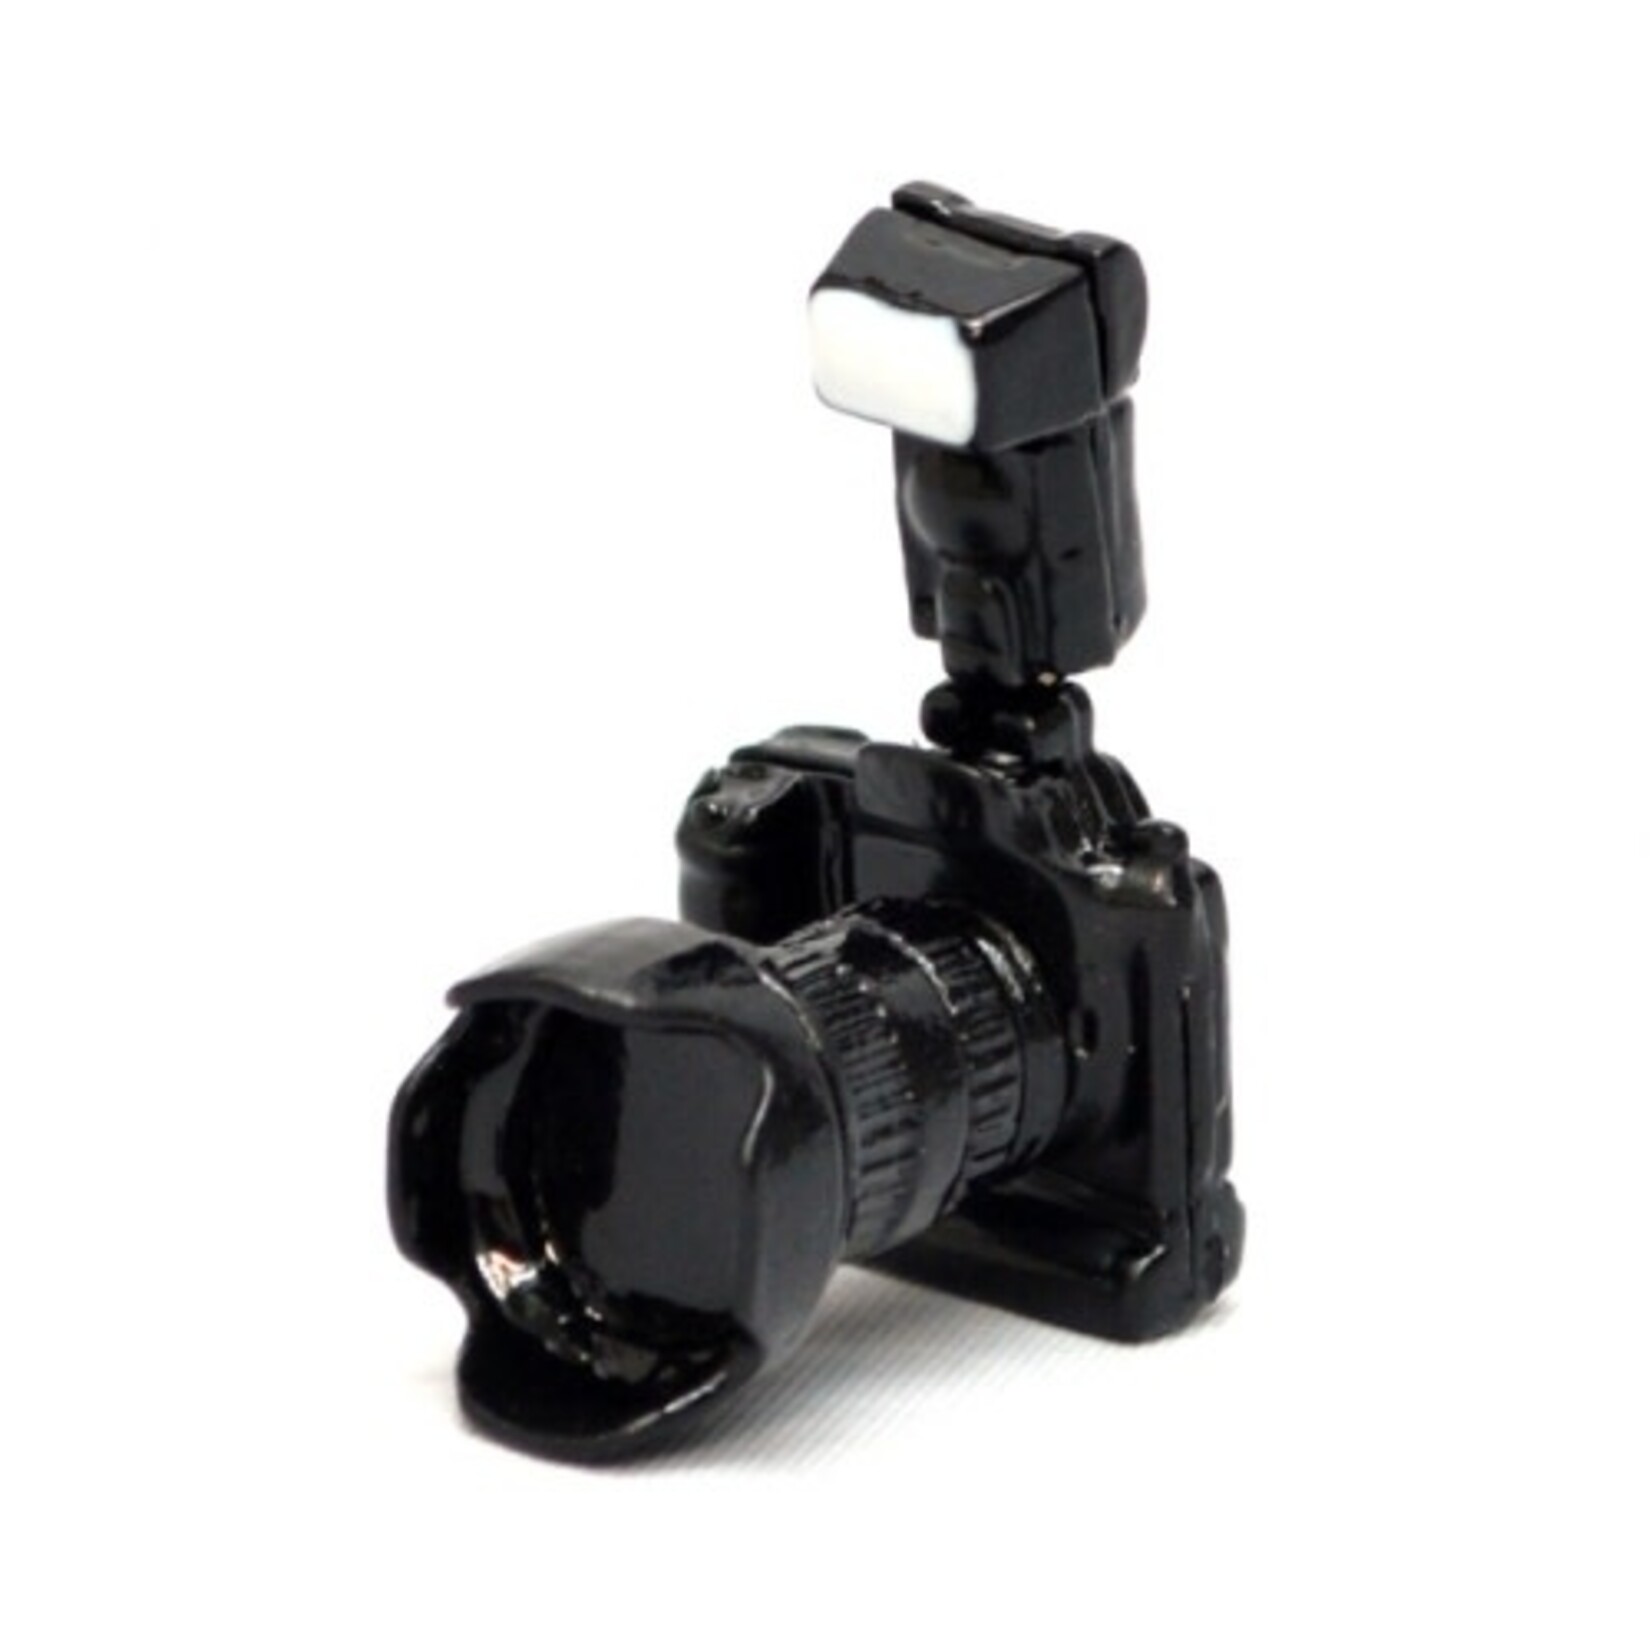 1/10 scale SLR Camera